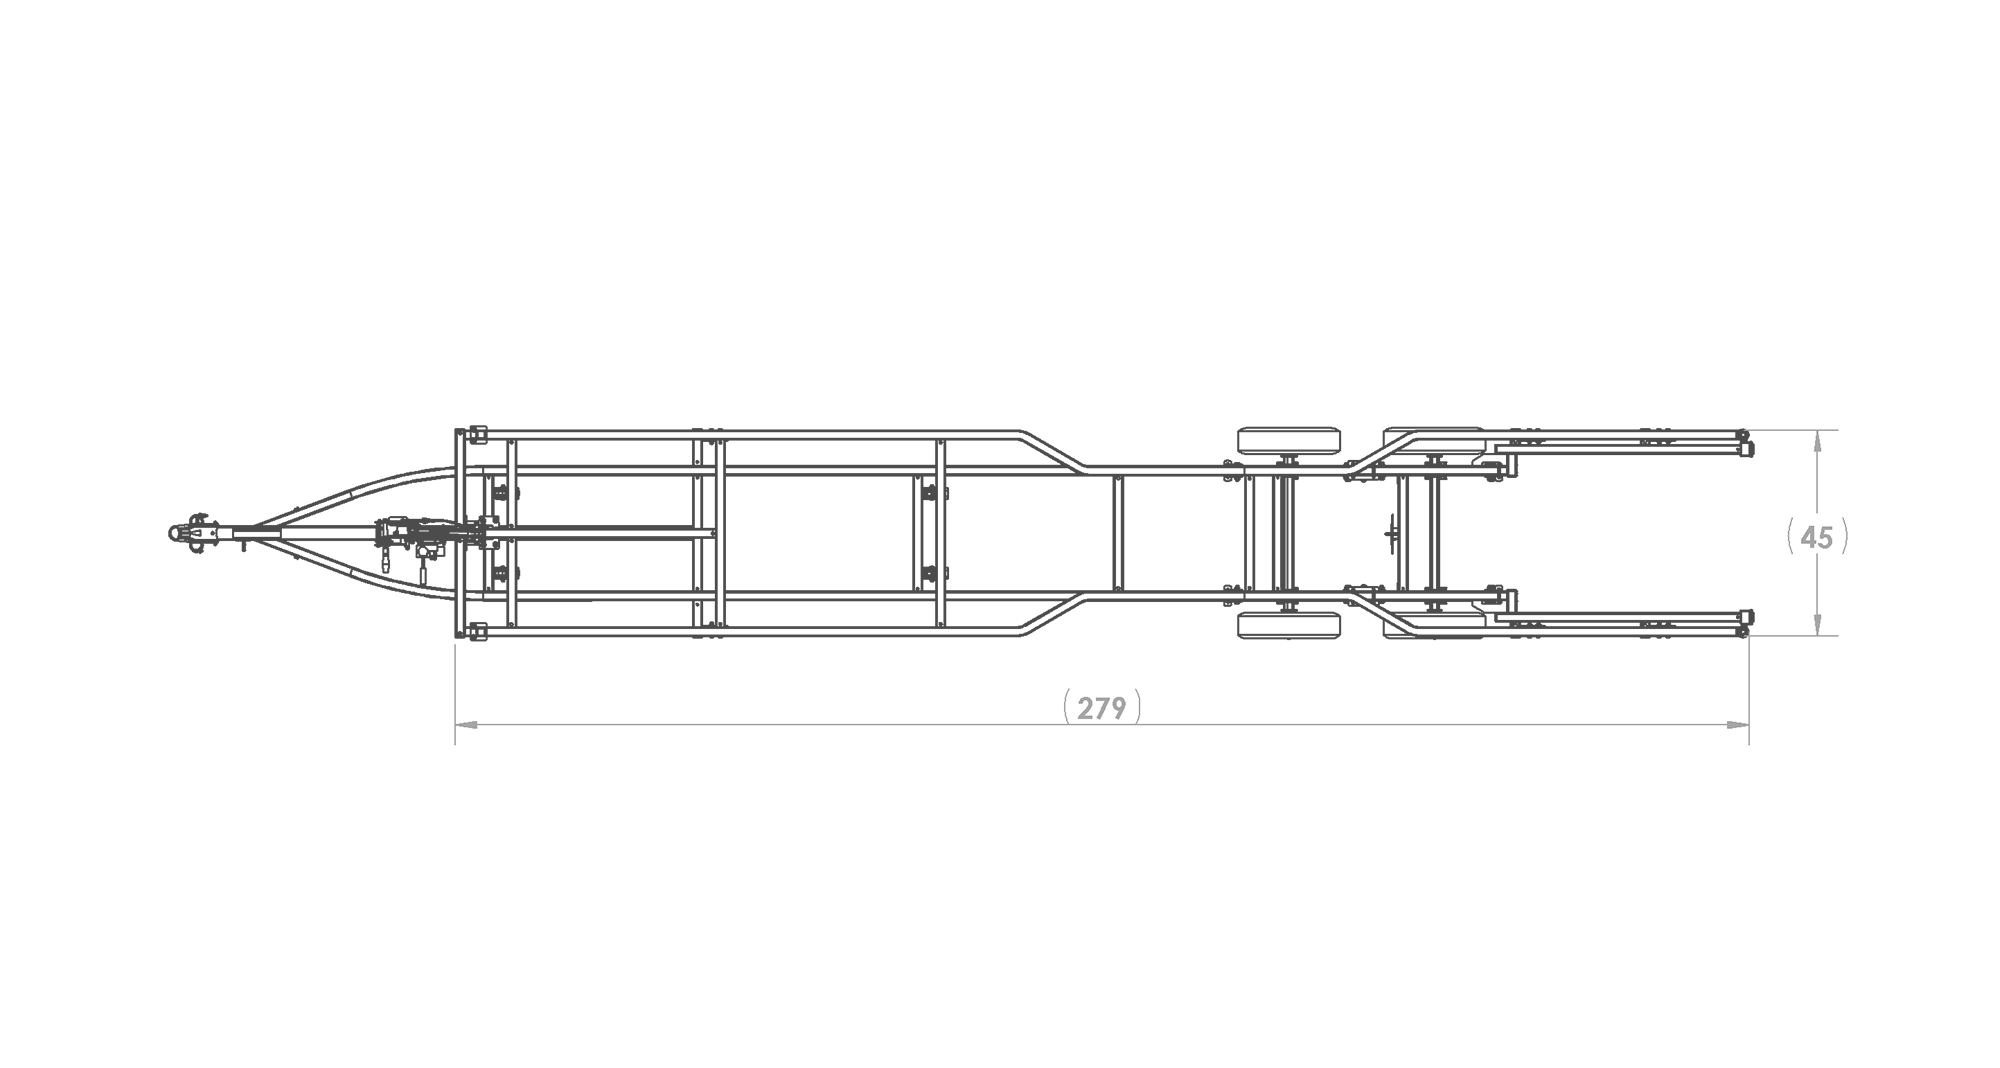 Karavan Trailer's Scissor Lift Pontoon Trailer, model number KPSHD-222, Top View Measurement